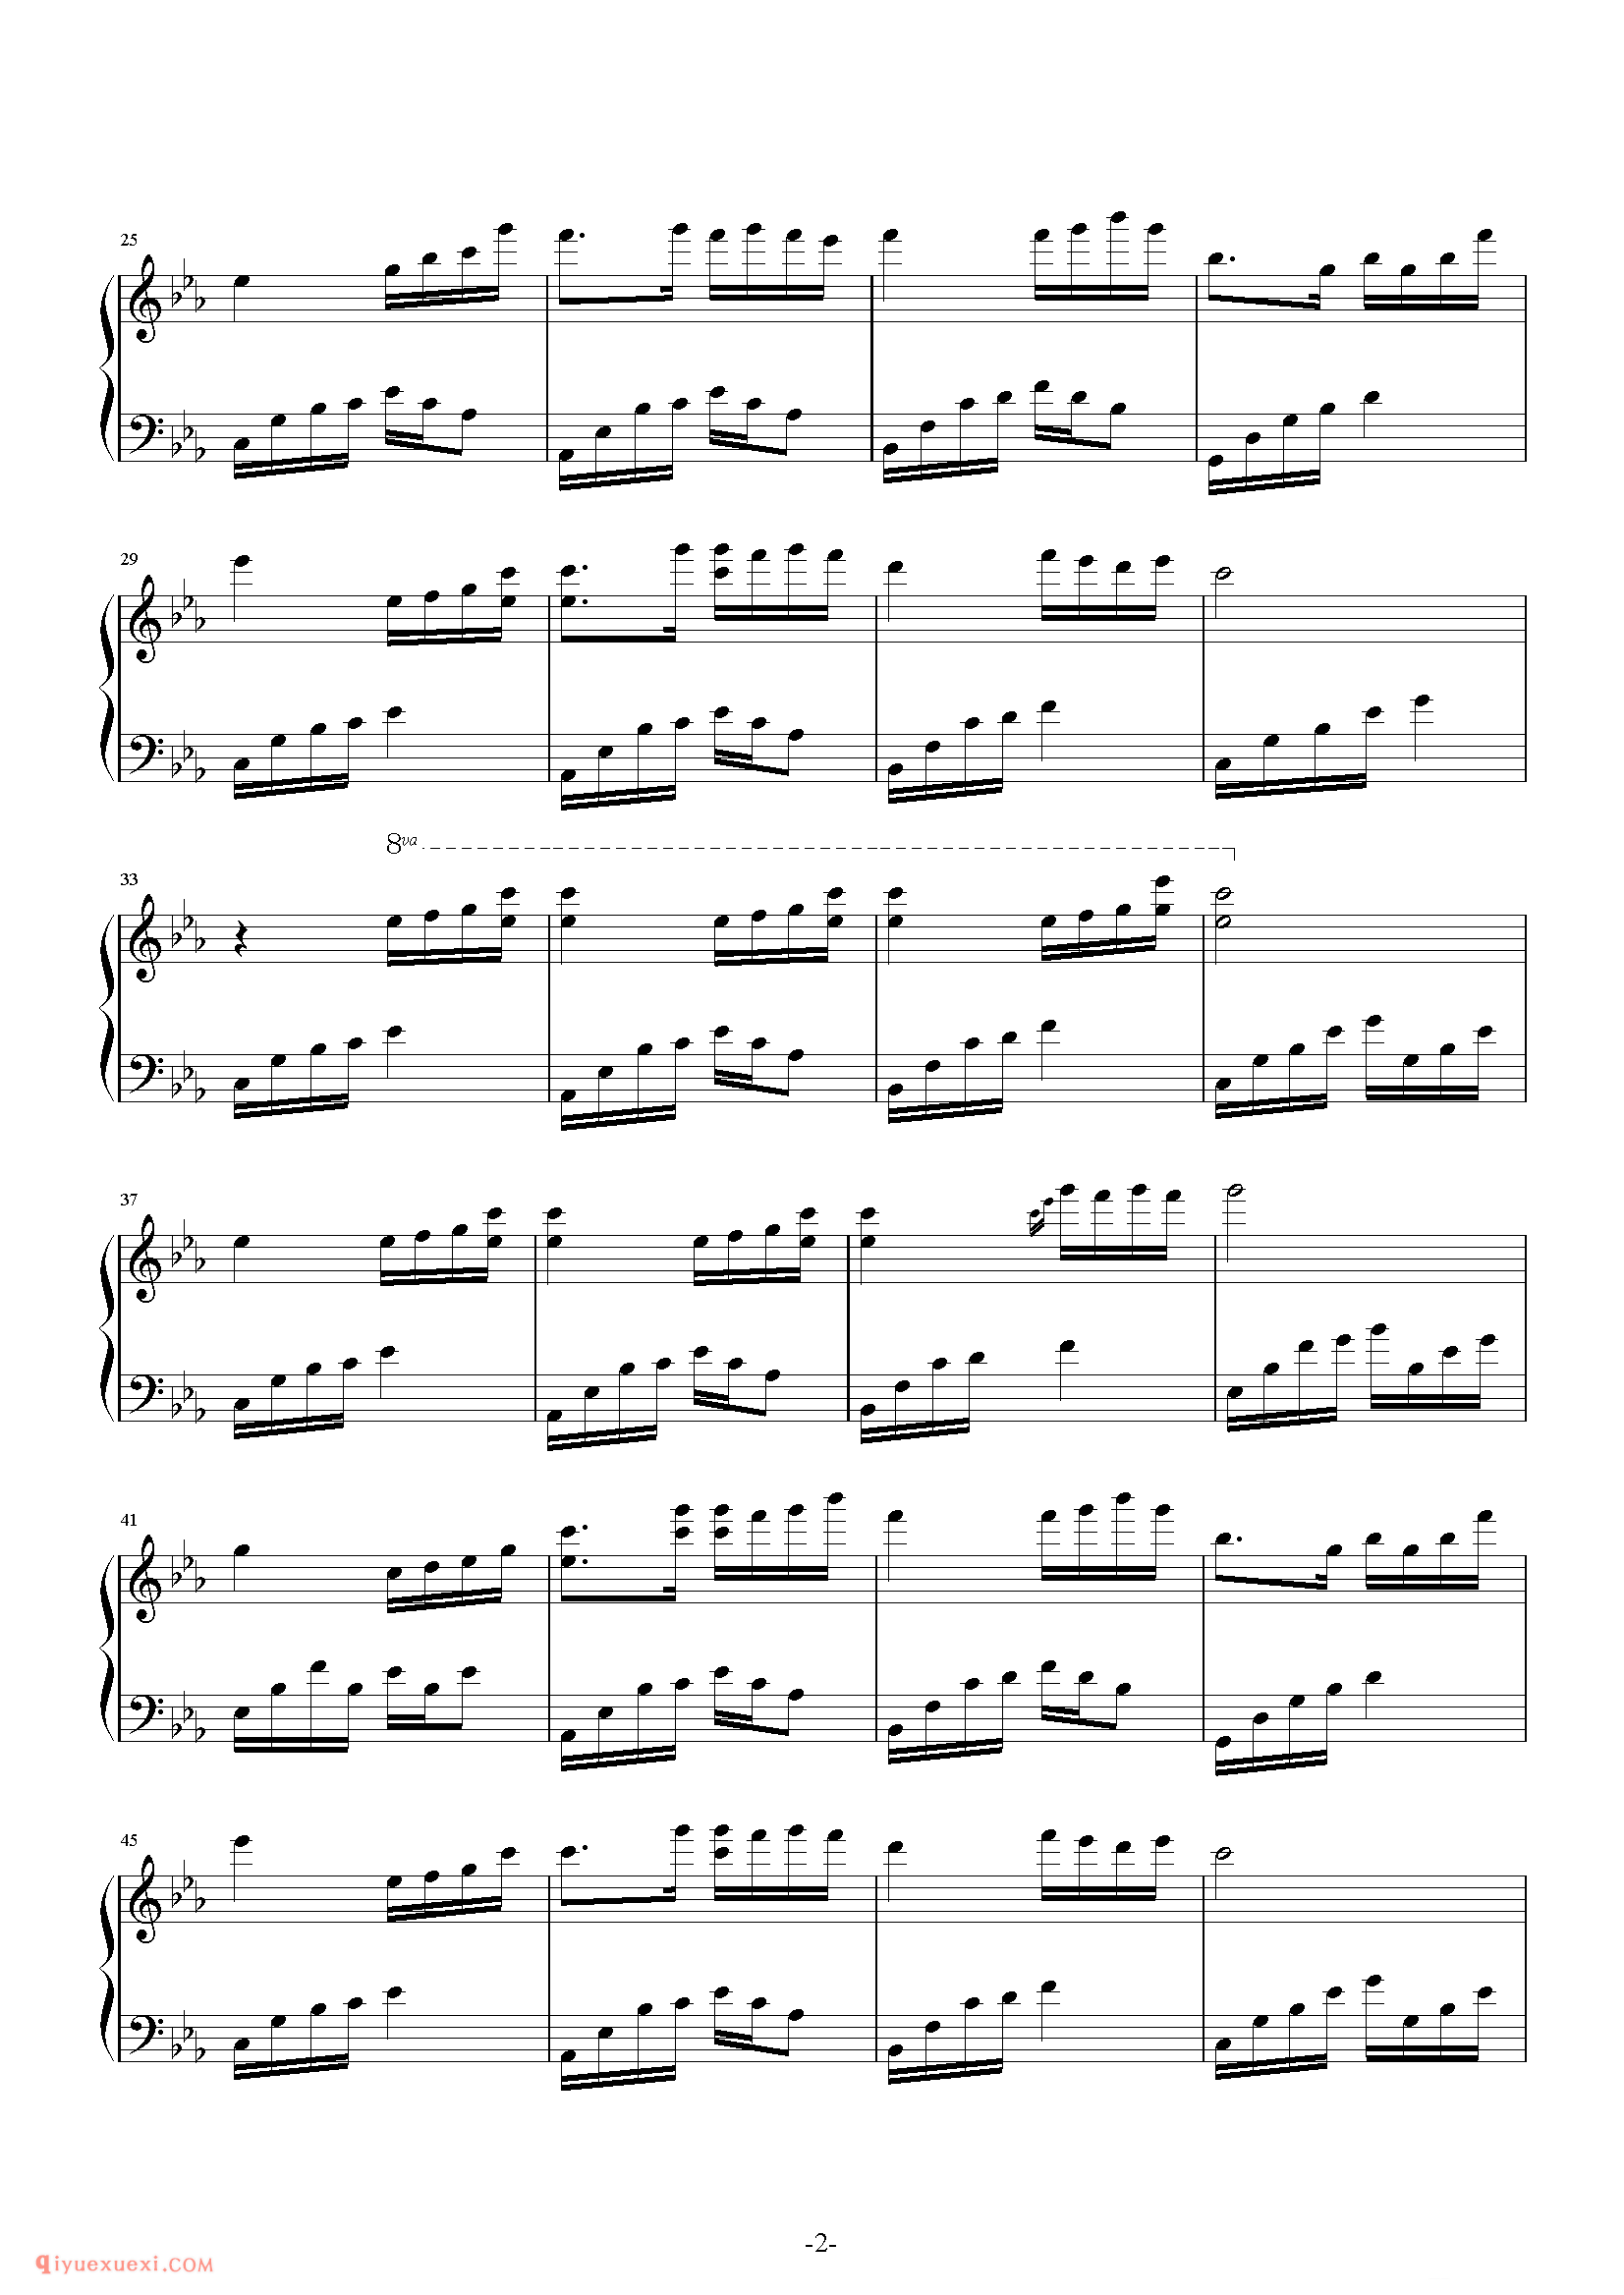 石进《夜的钢琴曲》第5首_石进夜的钢琴曲(5)五线谱